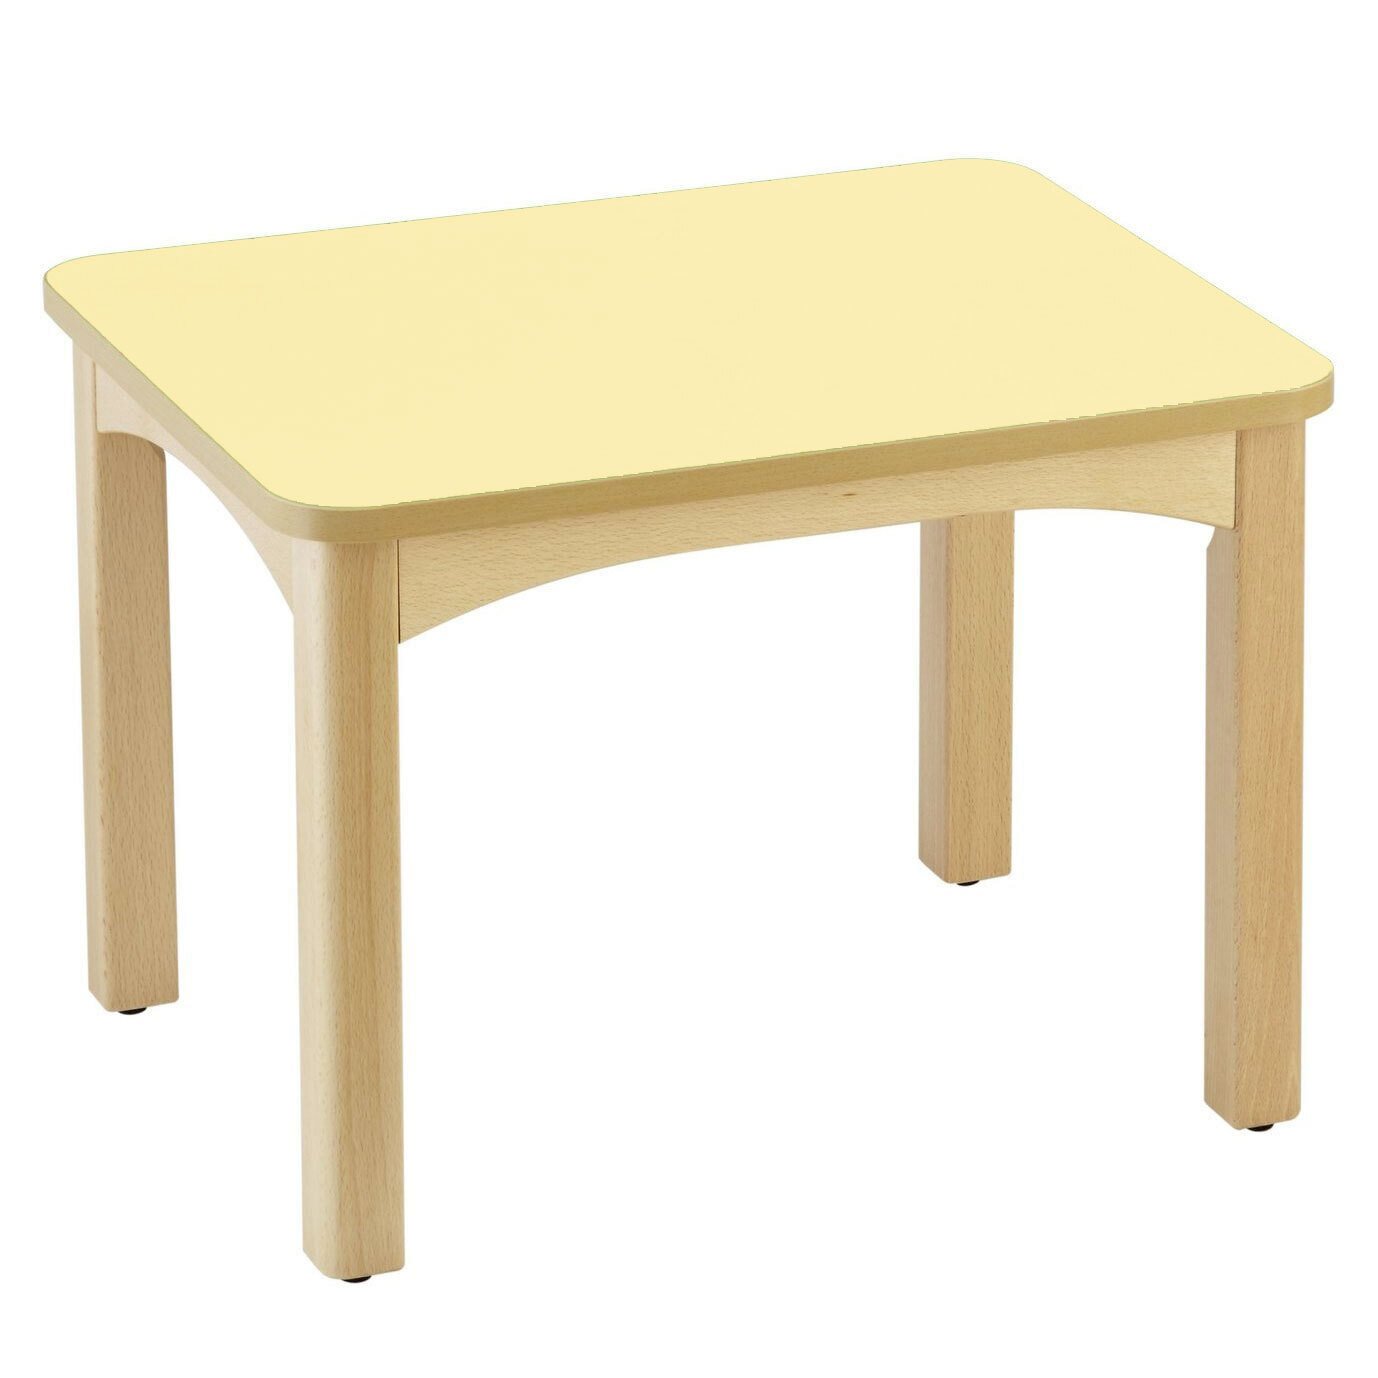 Table en bois pour crèche 60 x 50 cm t0 citron